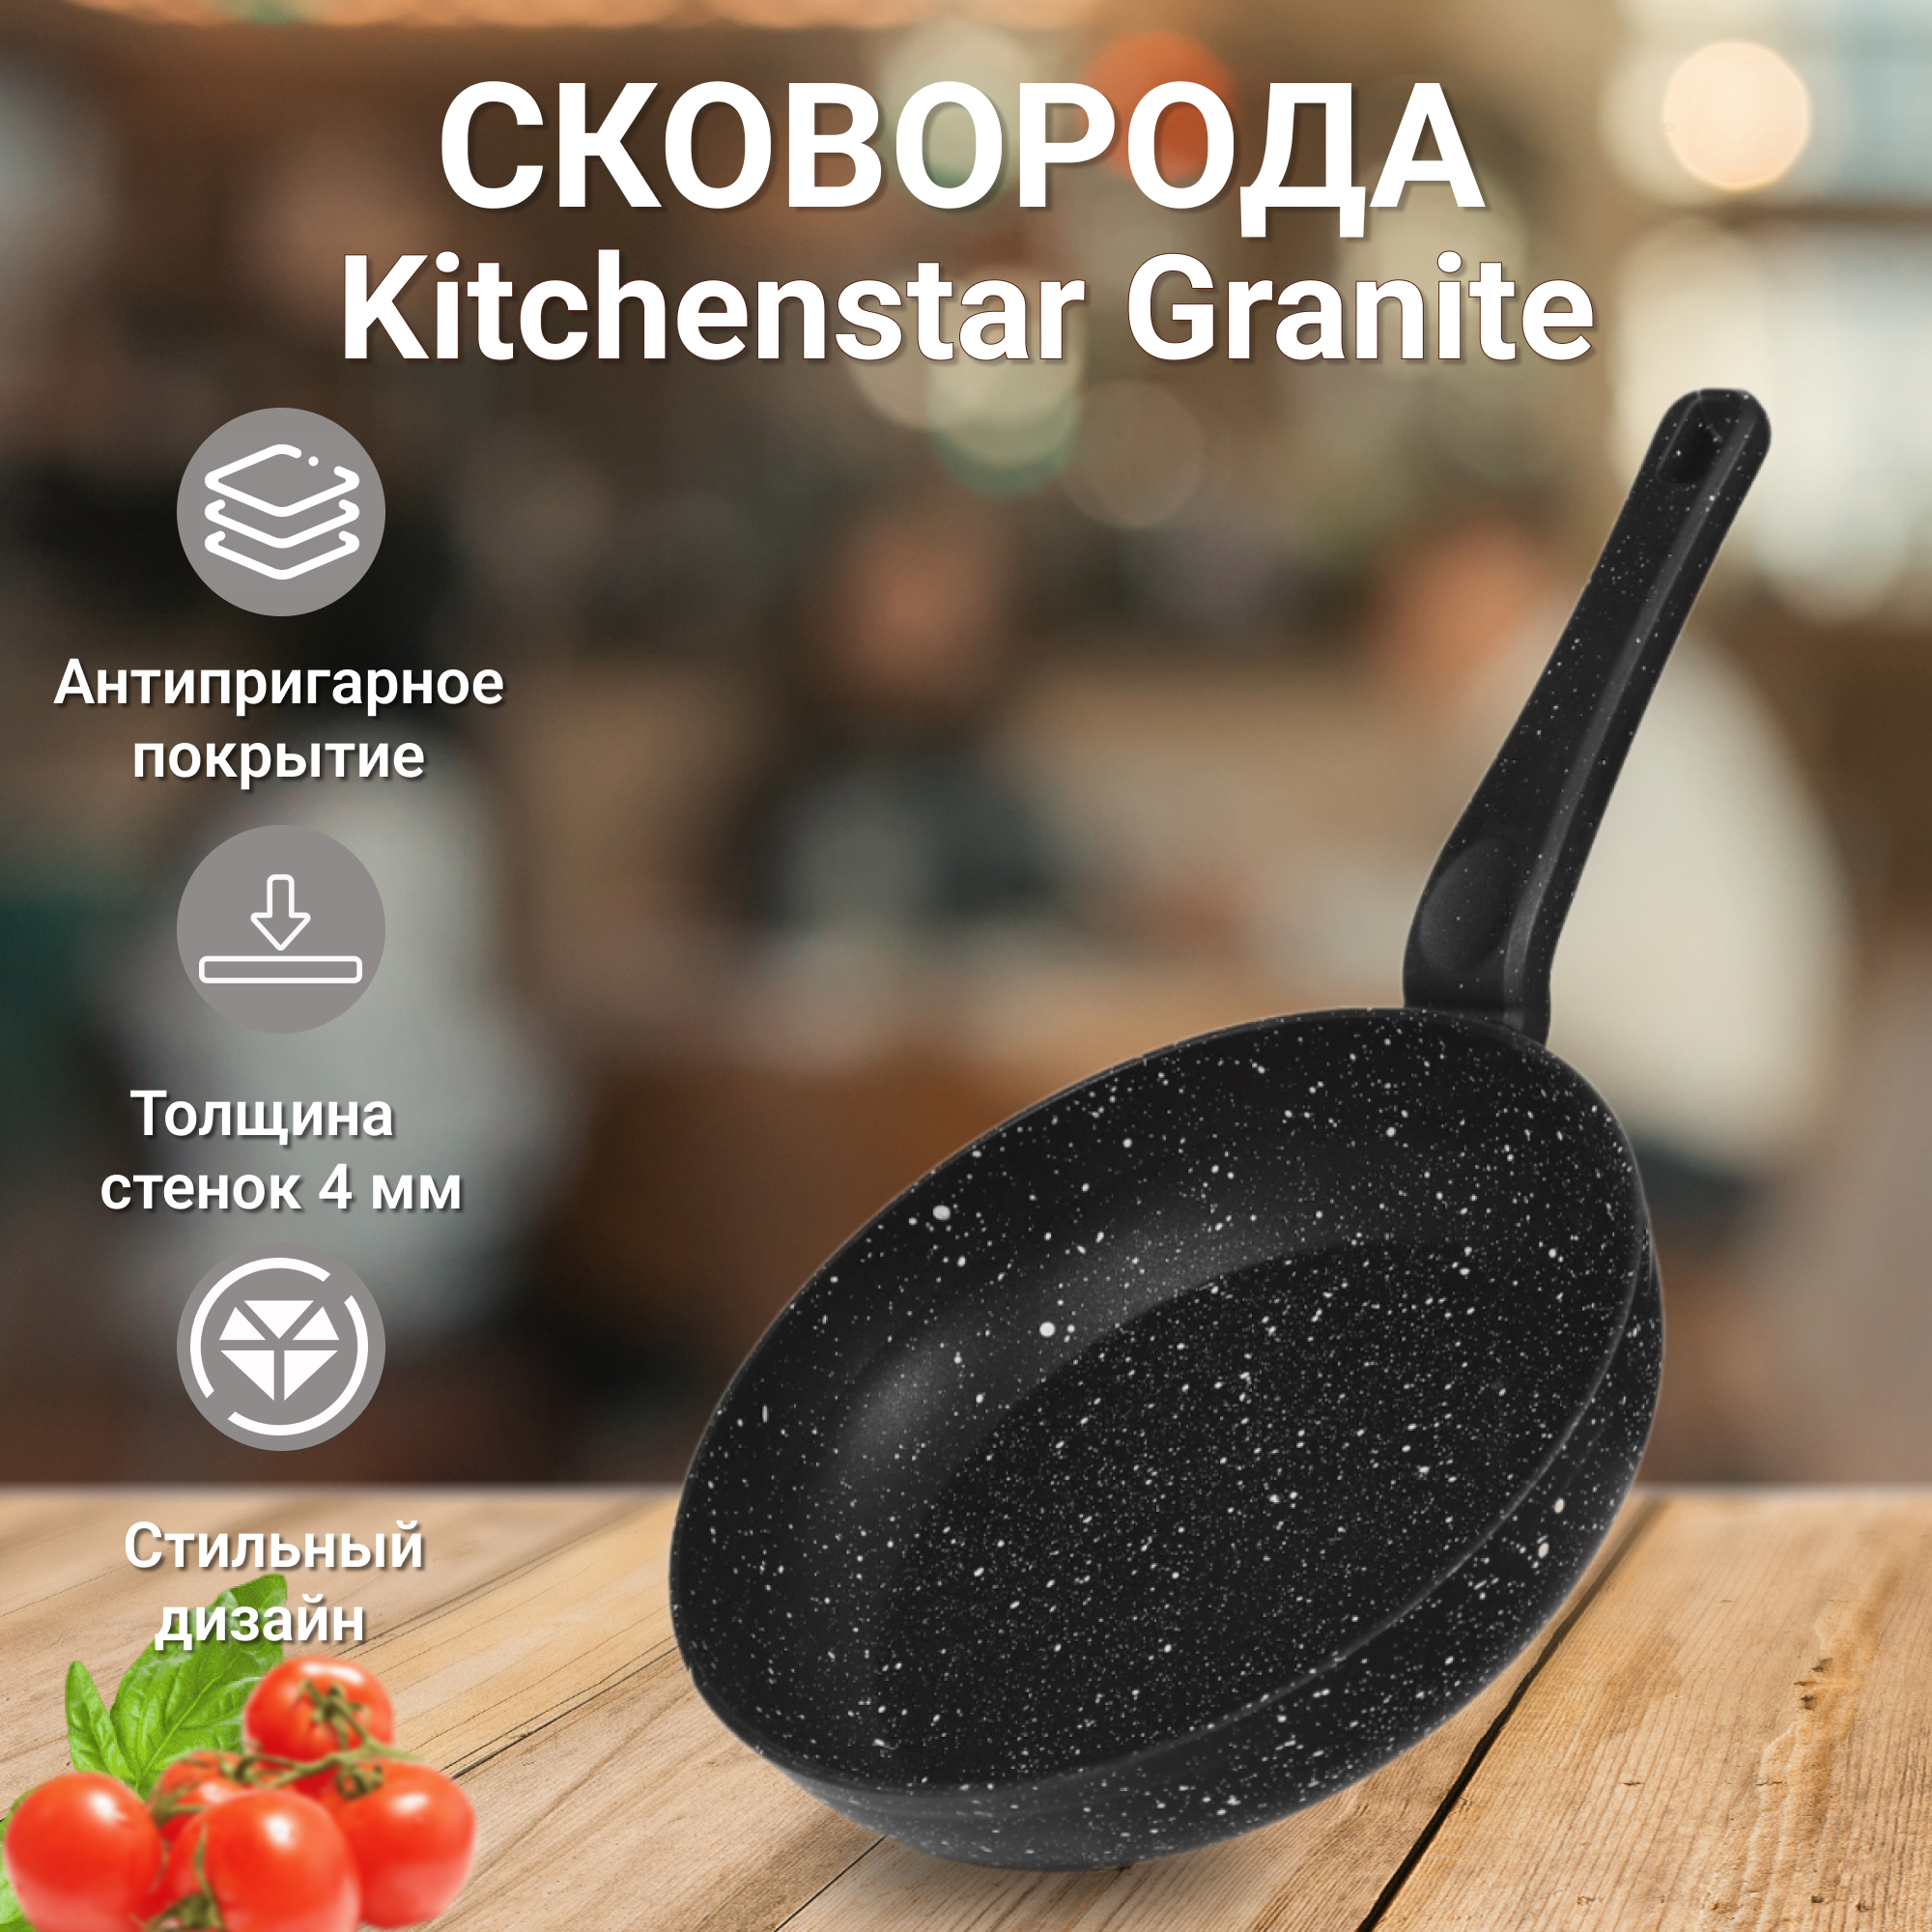 Сковорода Kitchenstar Granite черная 24 см, цвет черный - фото 2